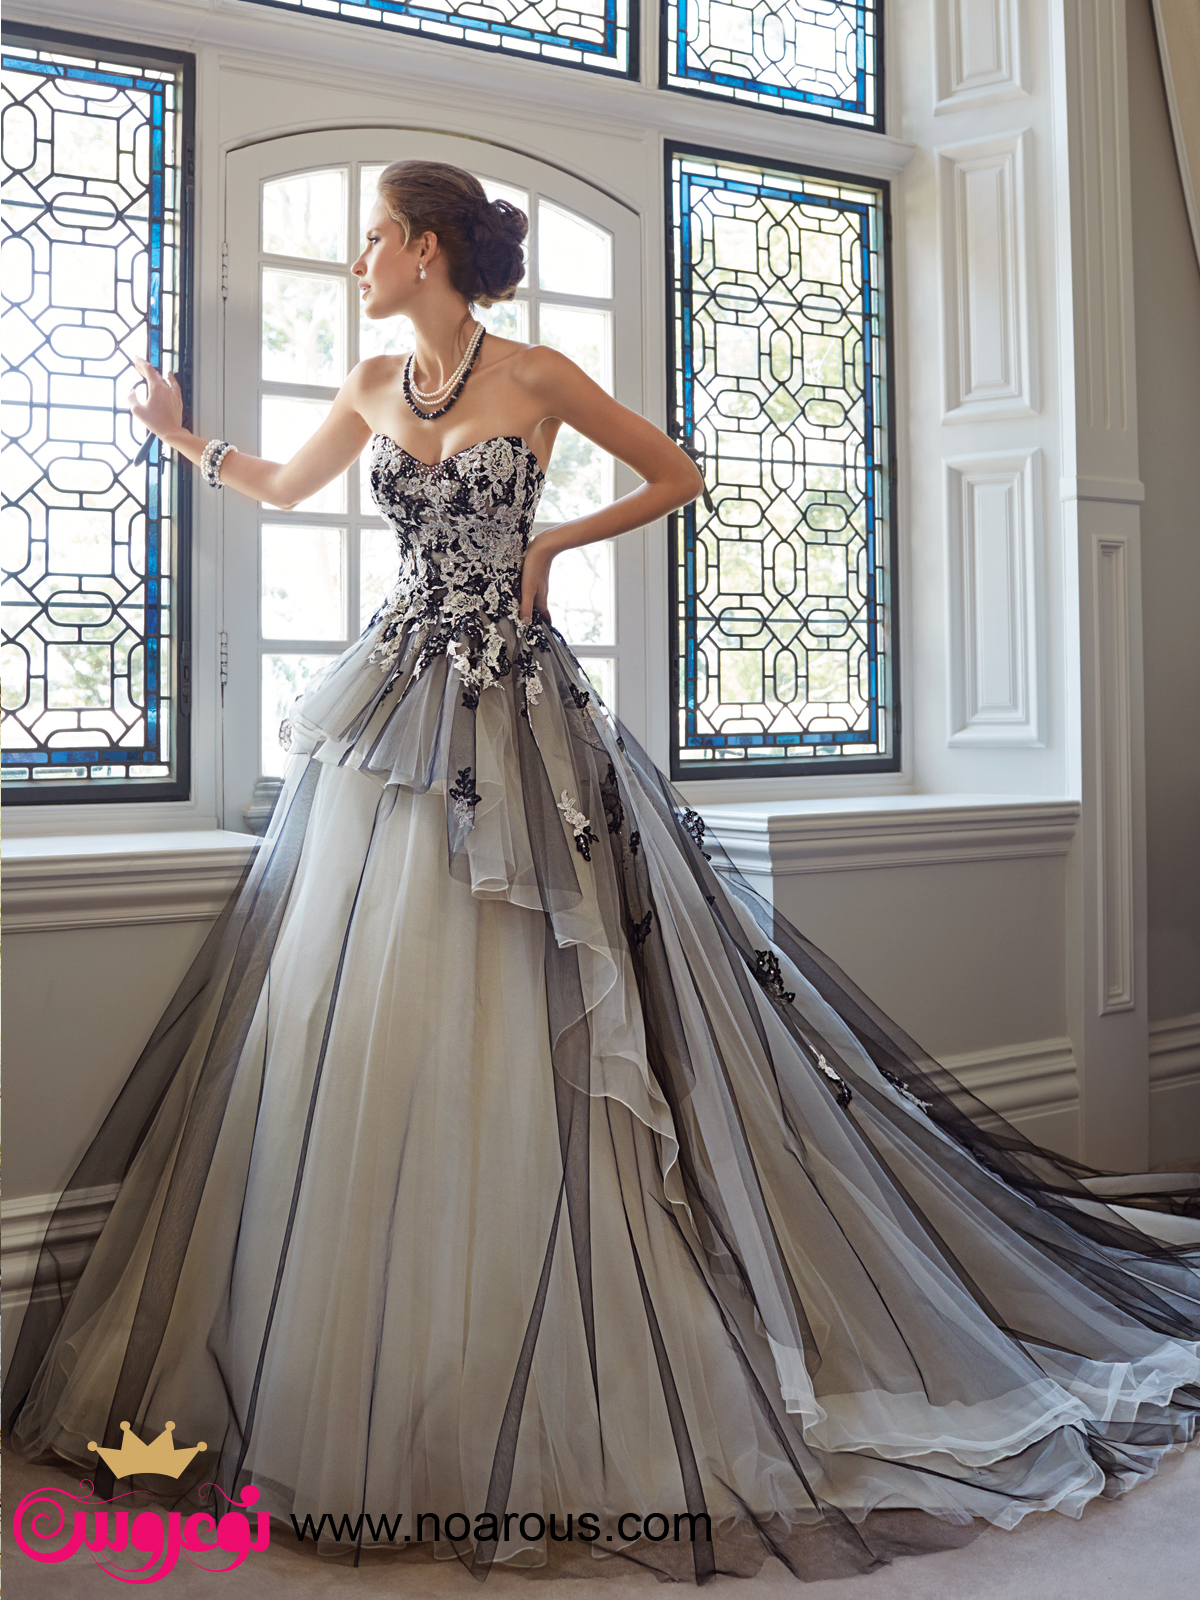 لباس عروس های بهار 2015 از سوفیا تولی